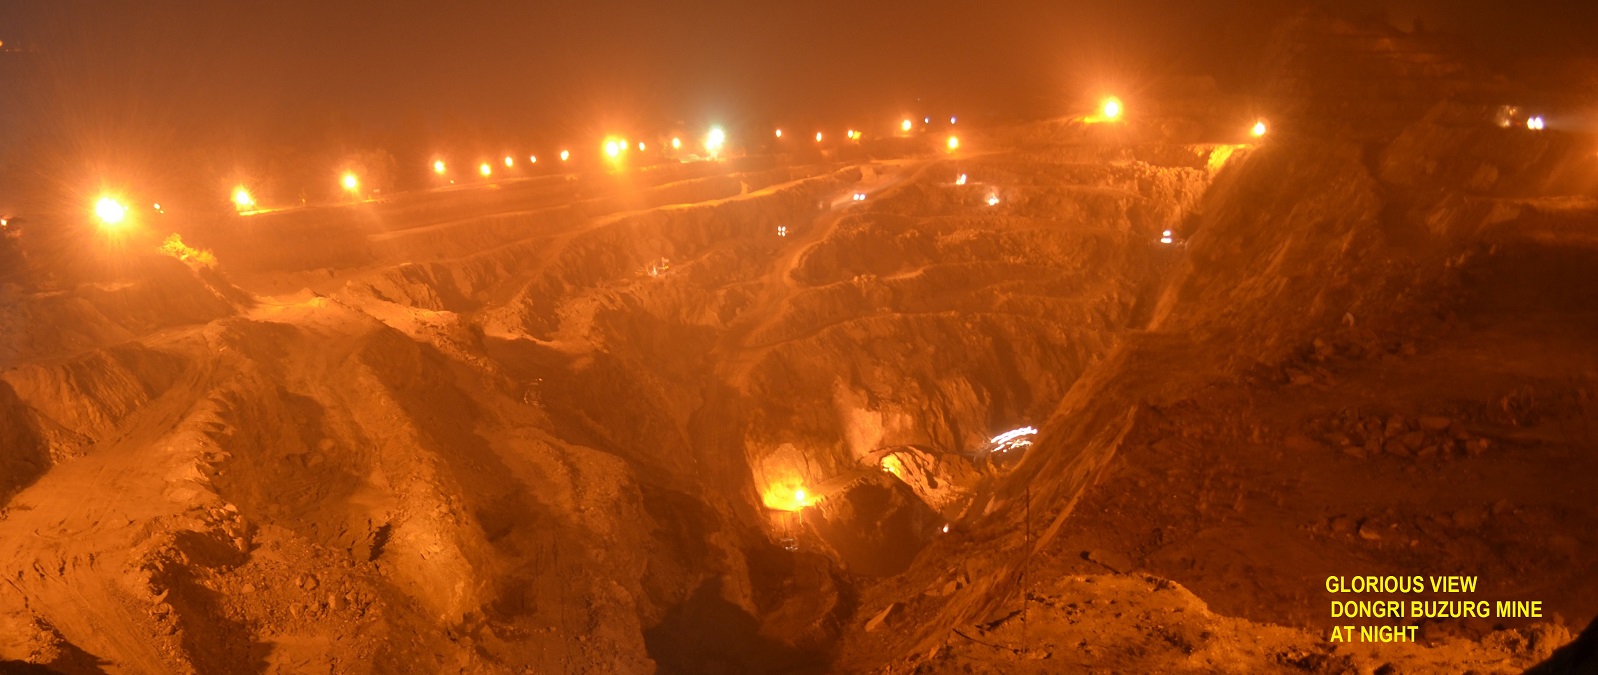 Dongri Buzurg Mines